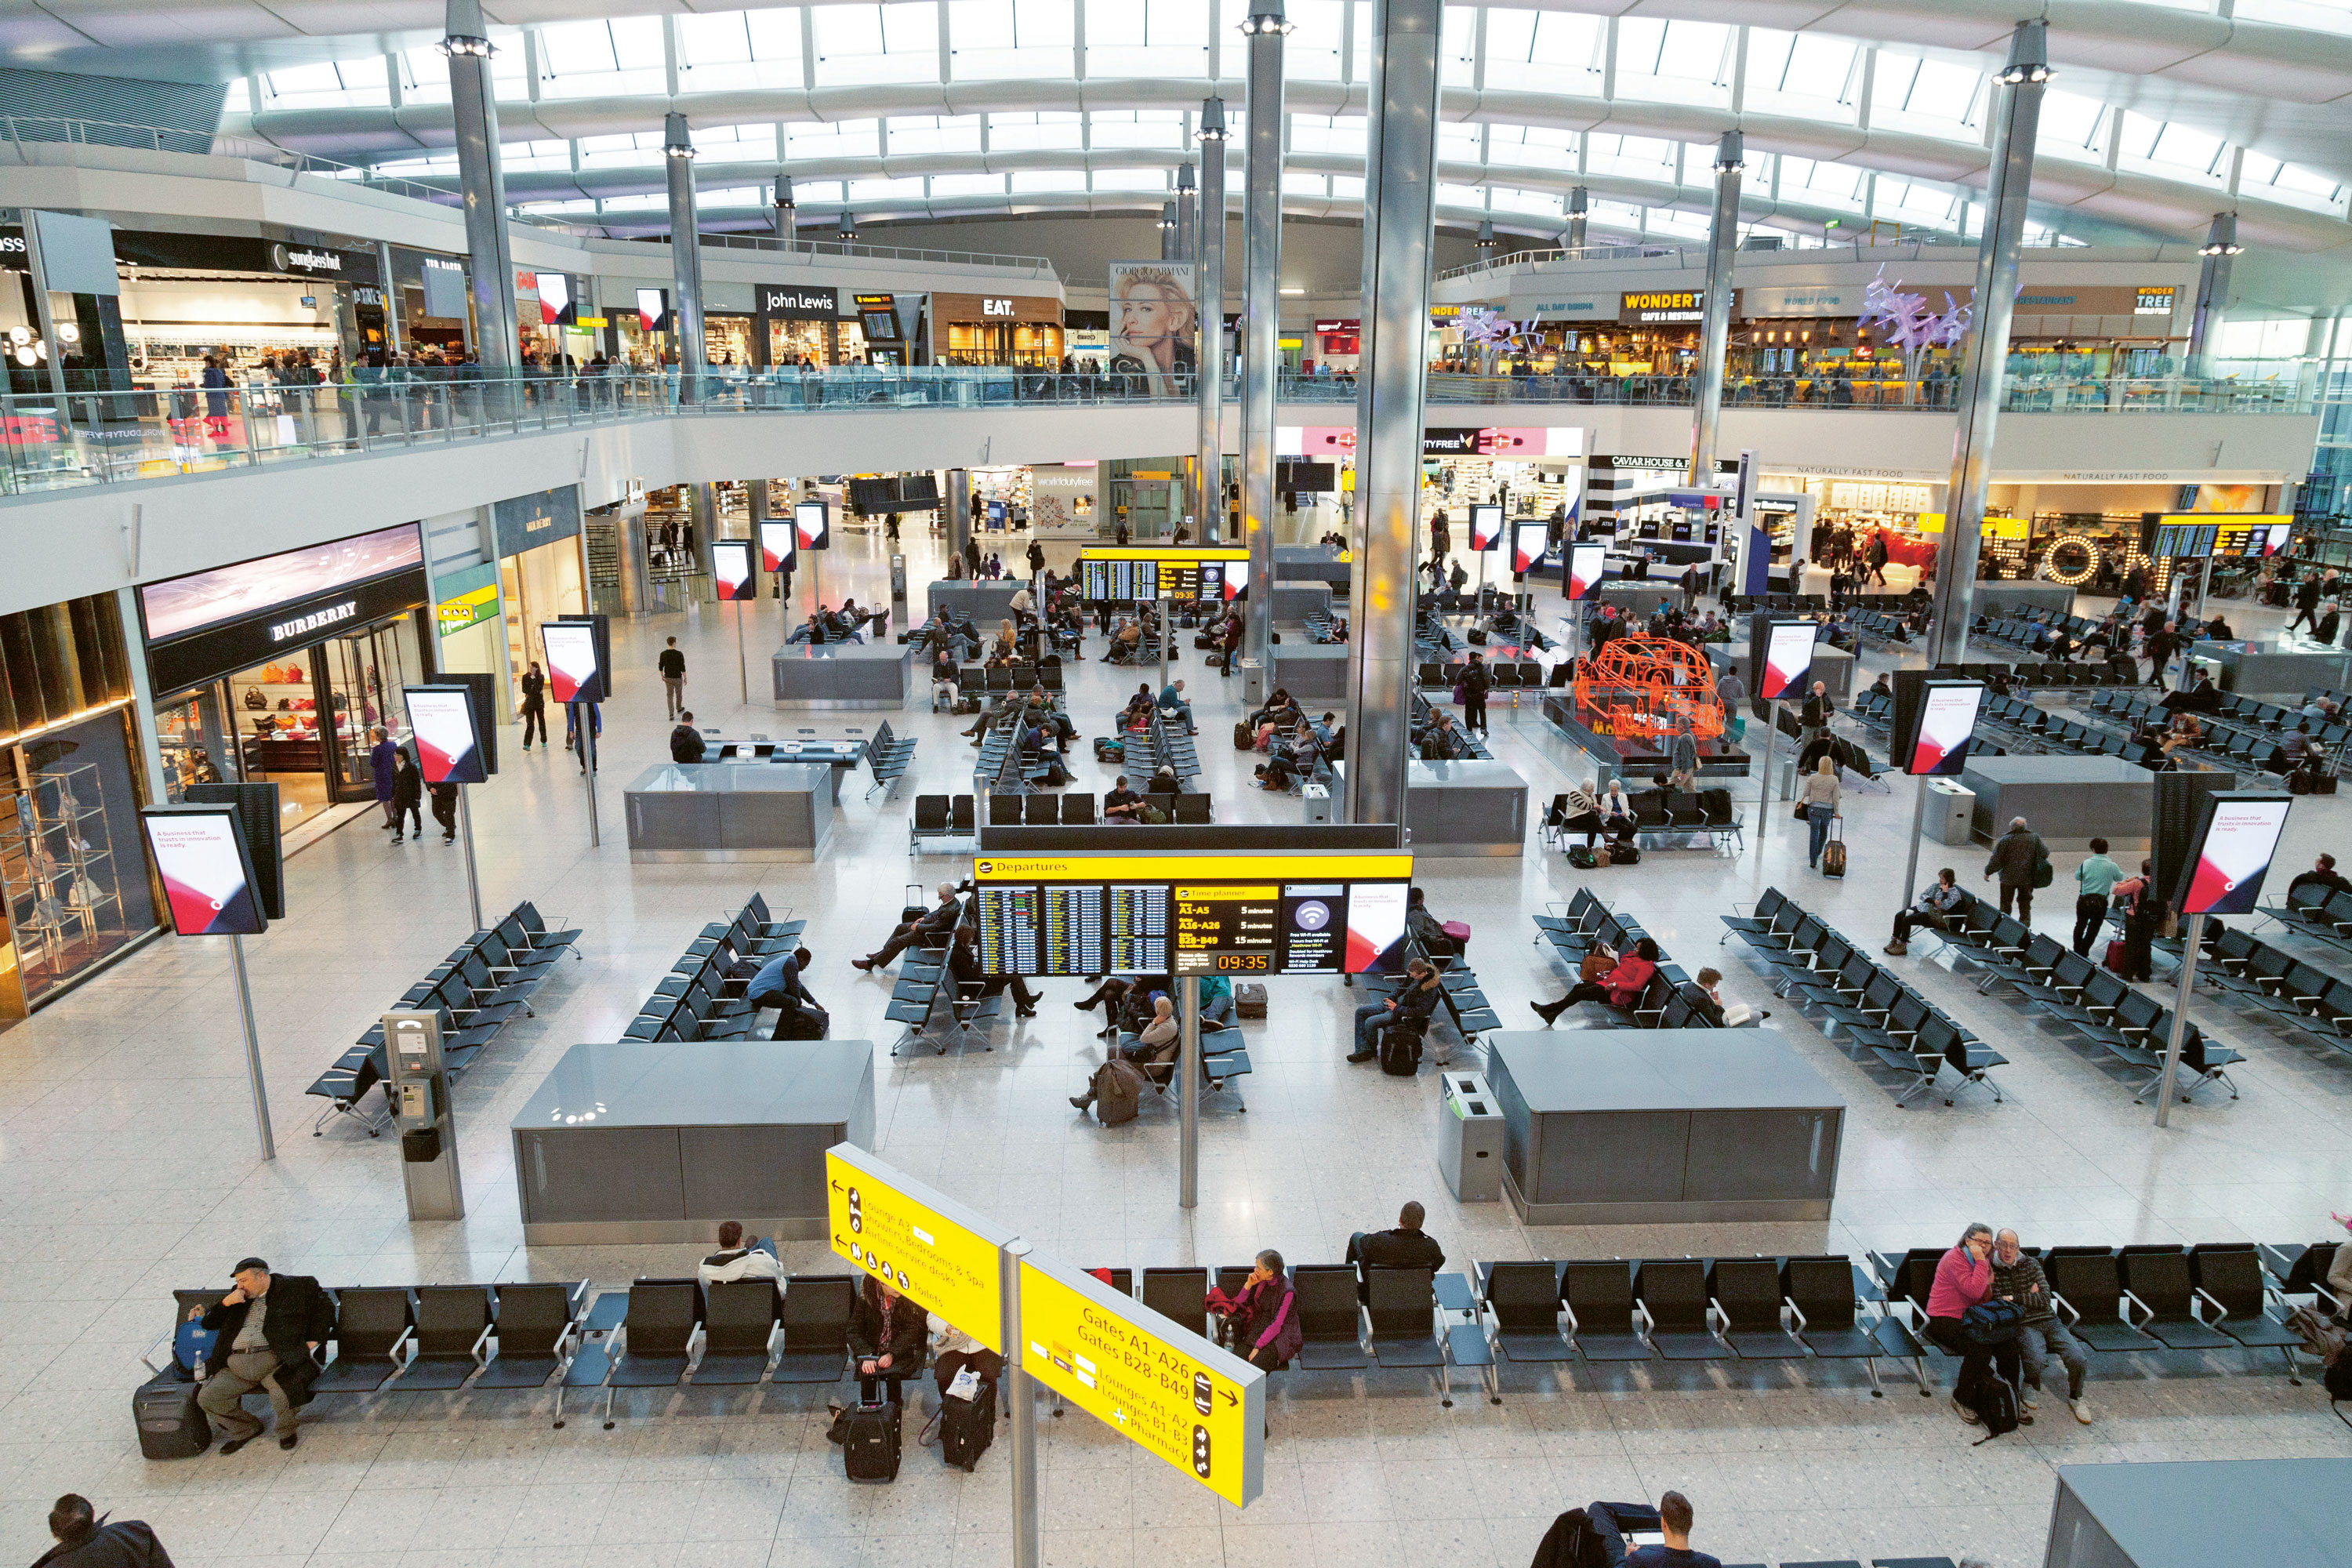 Londres-Heathrow transforme ses opérations aéroportuaires avec Genetec